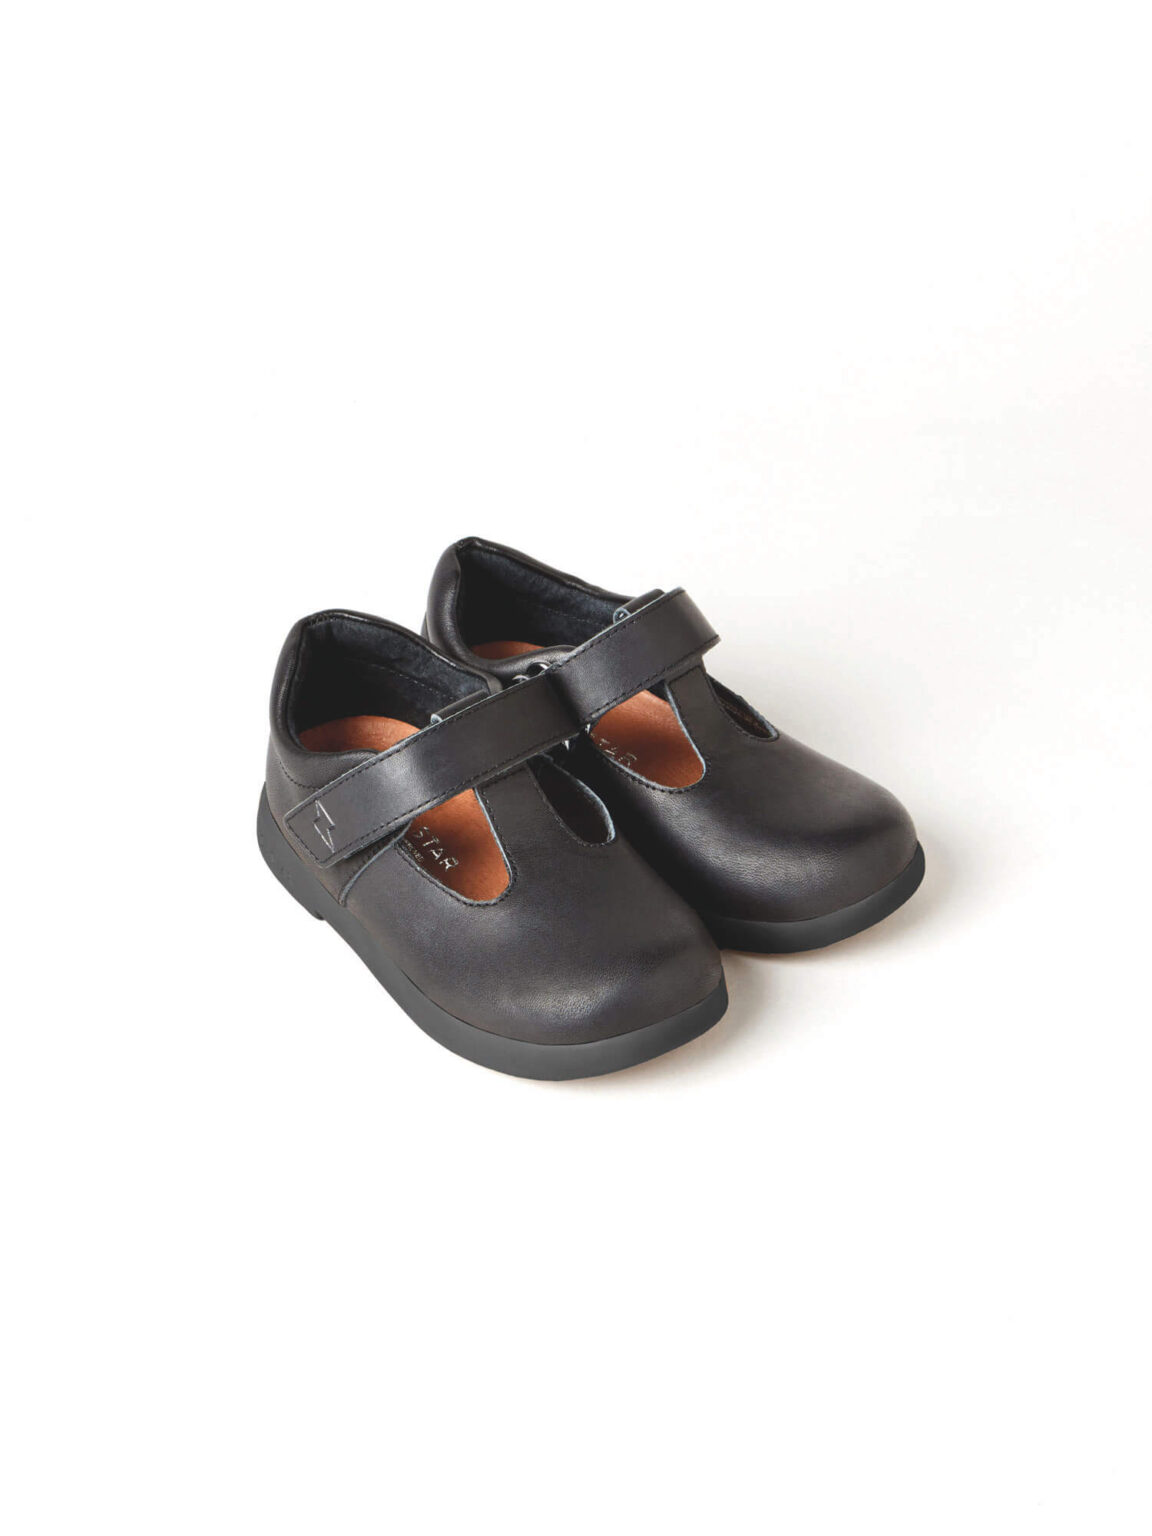 Astro School Shoes Infant Pair Copy